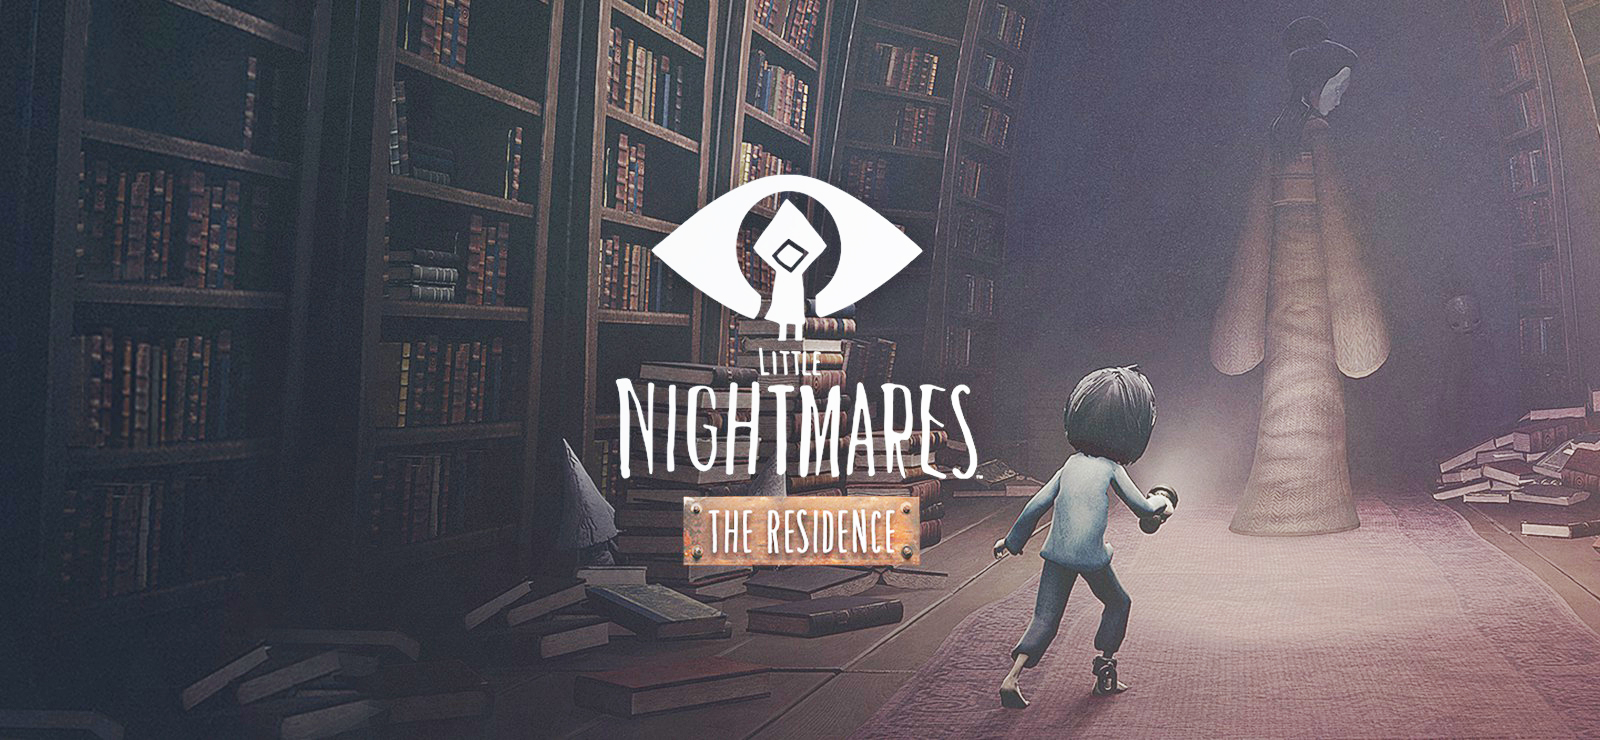 Little Nightmares/The Residence DLC-Резиденция/Прохождение